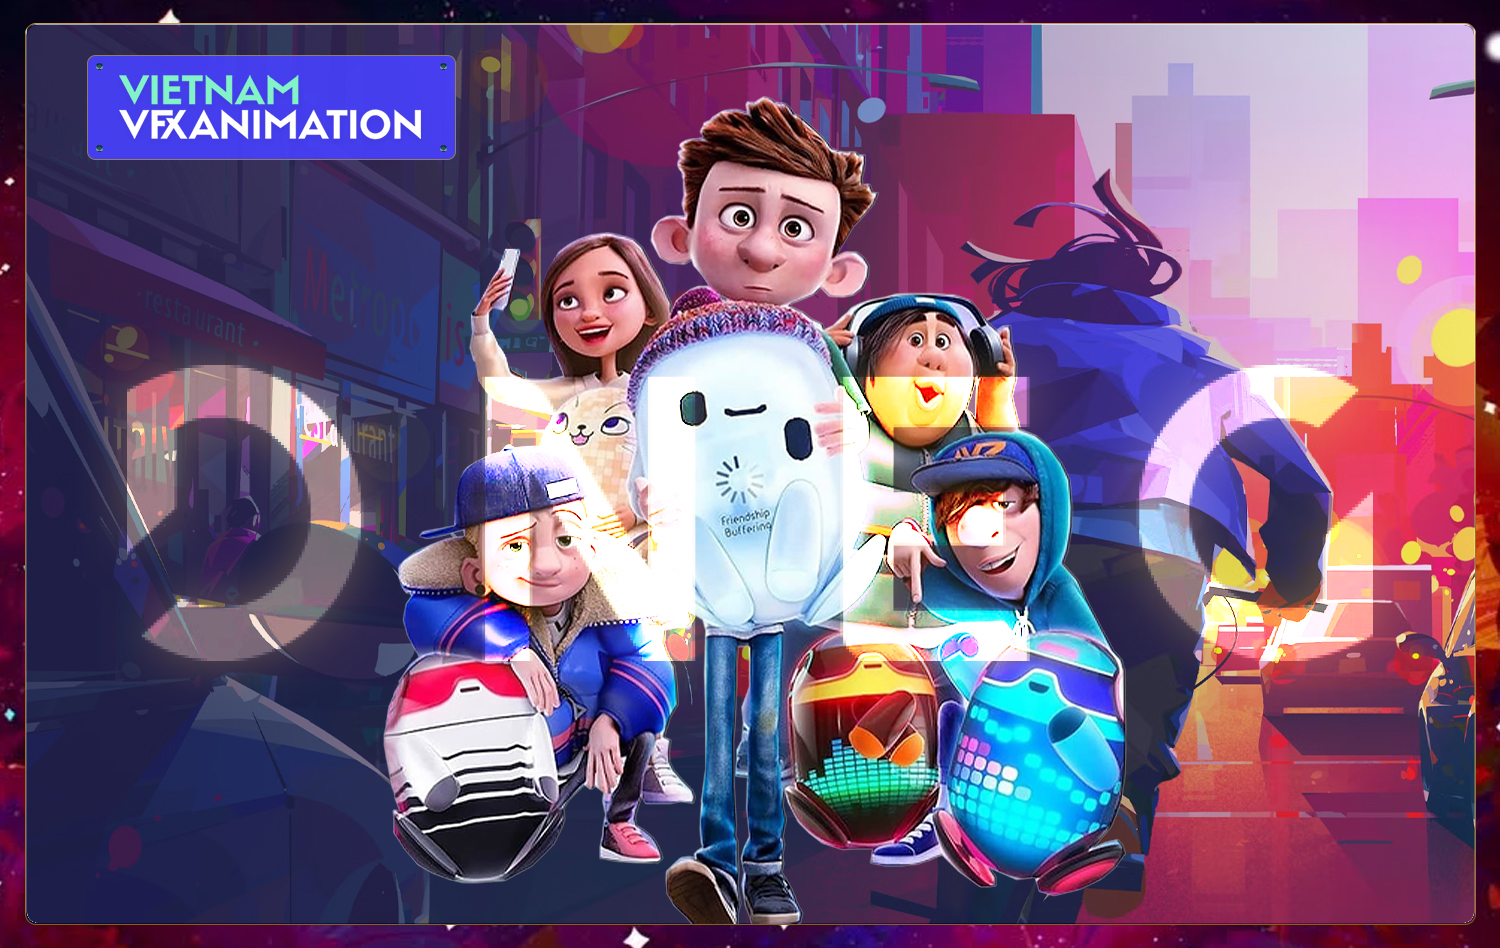 DNEG Animation bổ nhiệm Creative Director mới, xác định đẩy mạnh sản xuất  series dài tập - Vfx-Animation